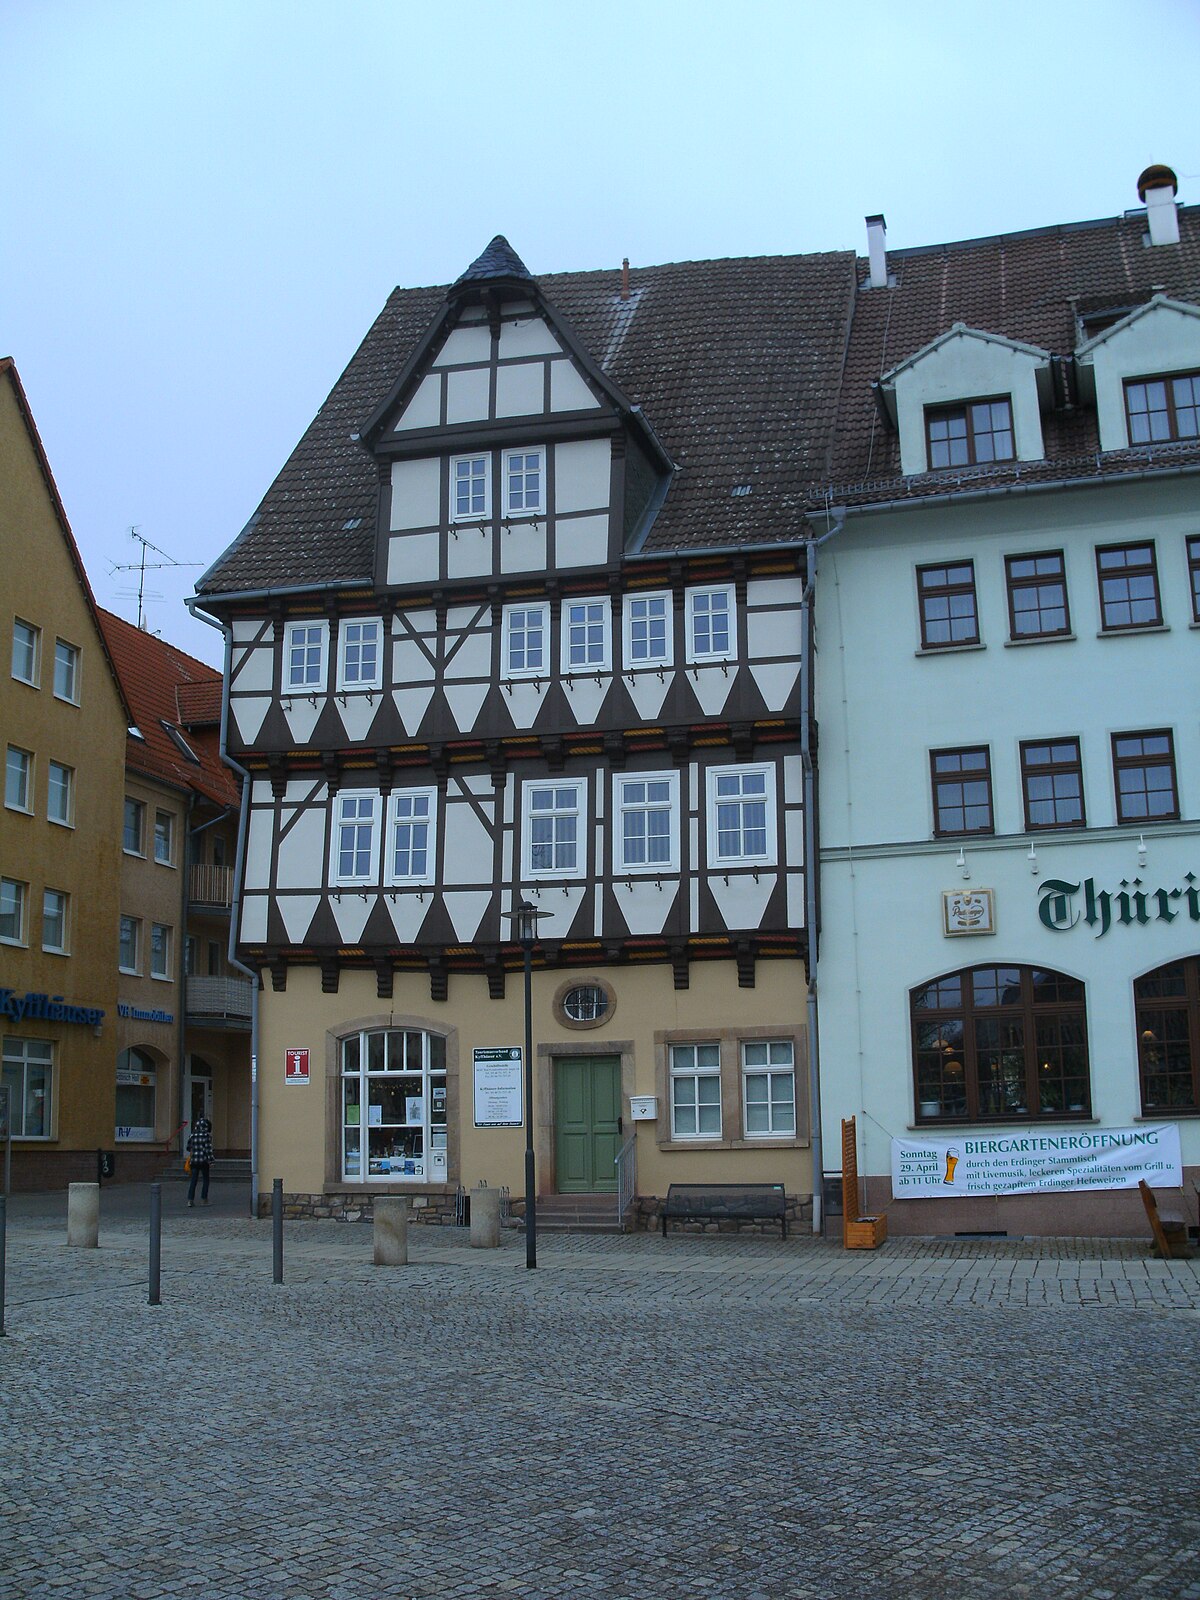 File:Häuser in Bad Frankenhausen.JPG - Wikimedia Commons.